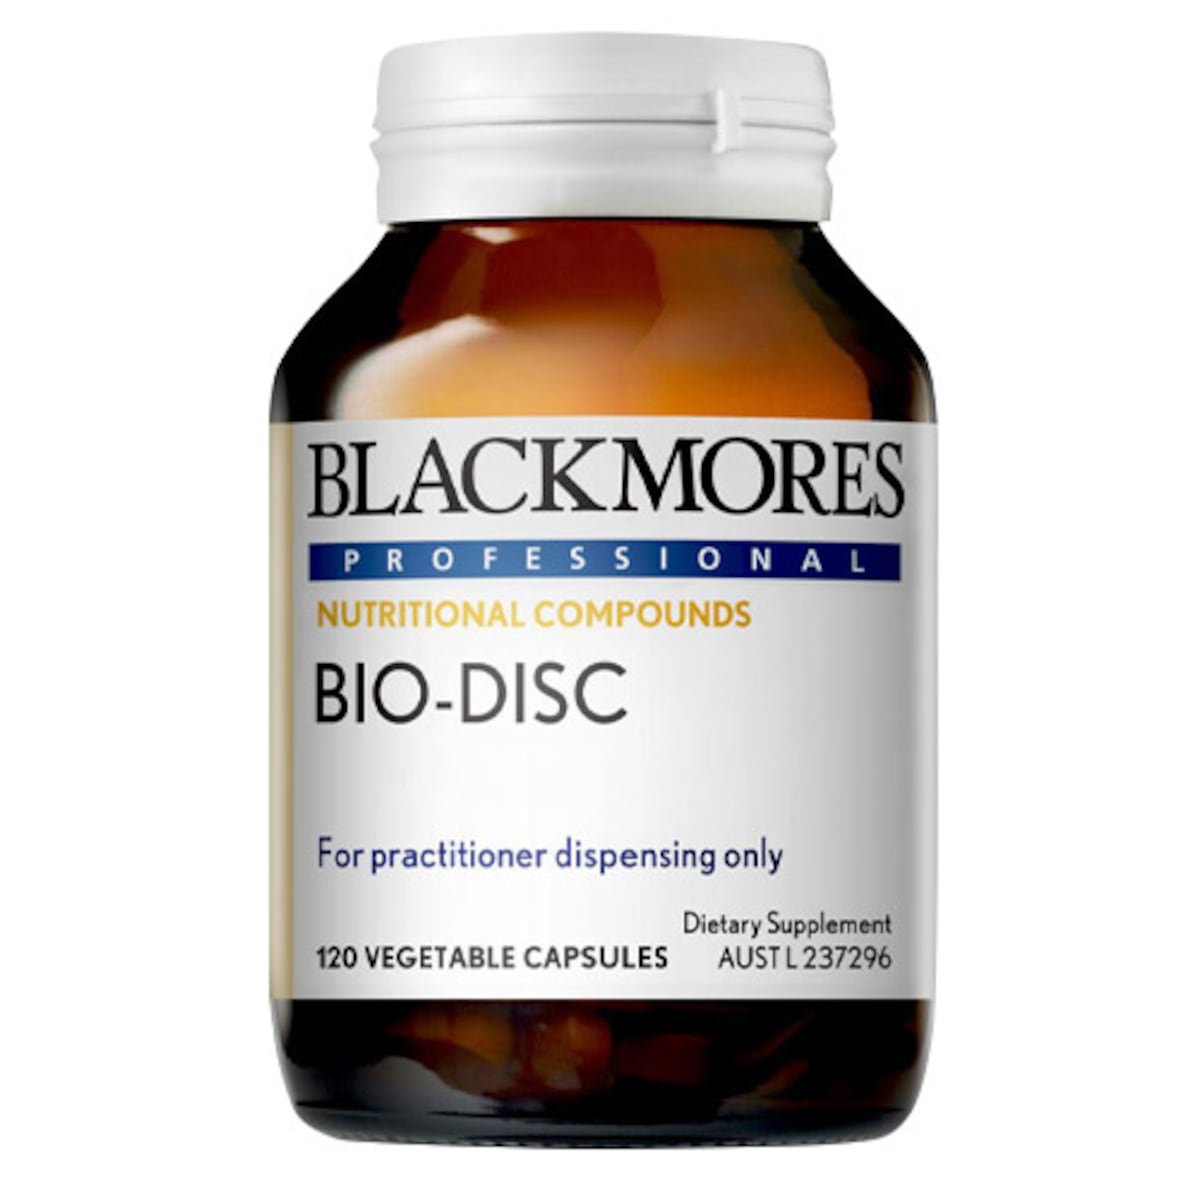 Blackmores Professional Bio-DISC 120 Capsules